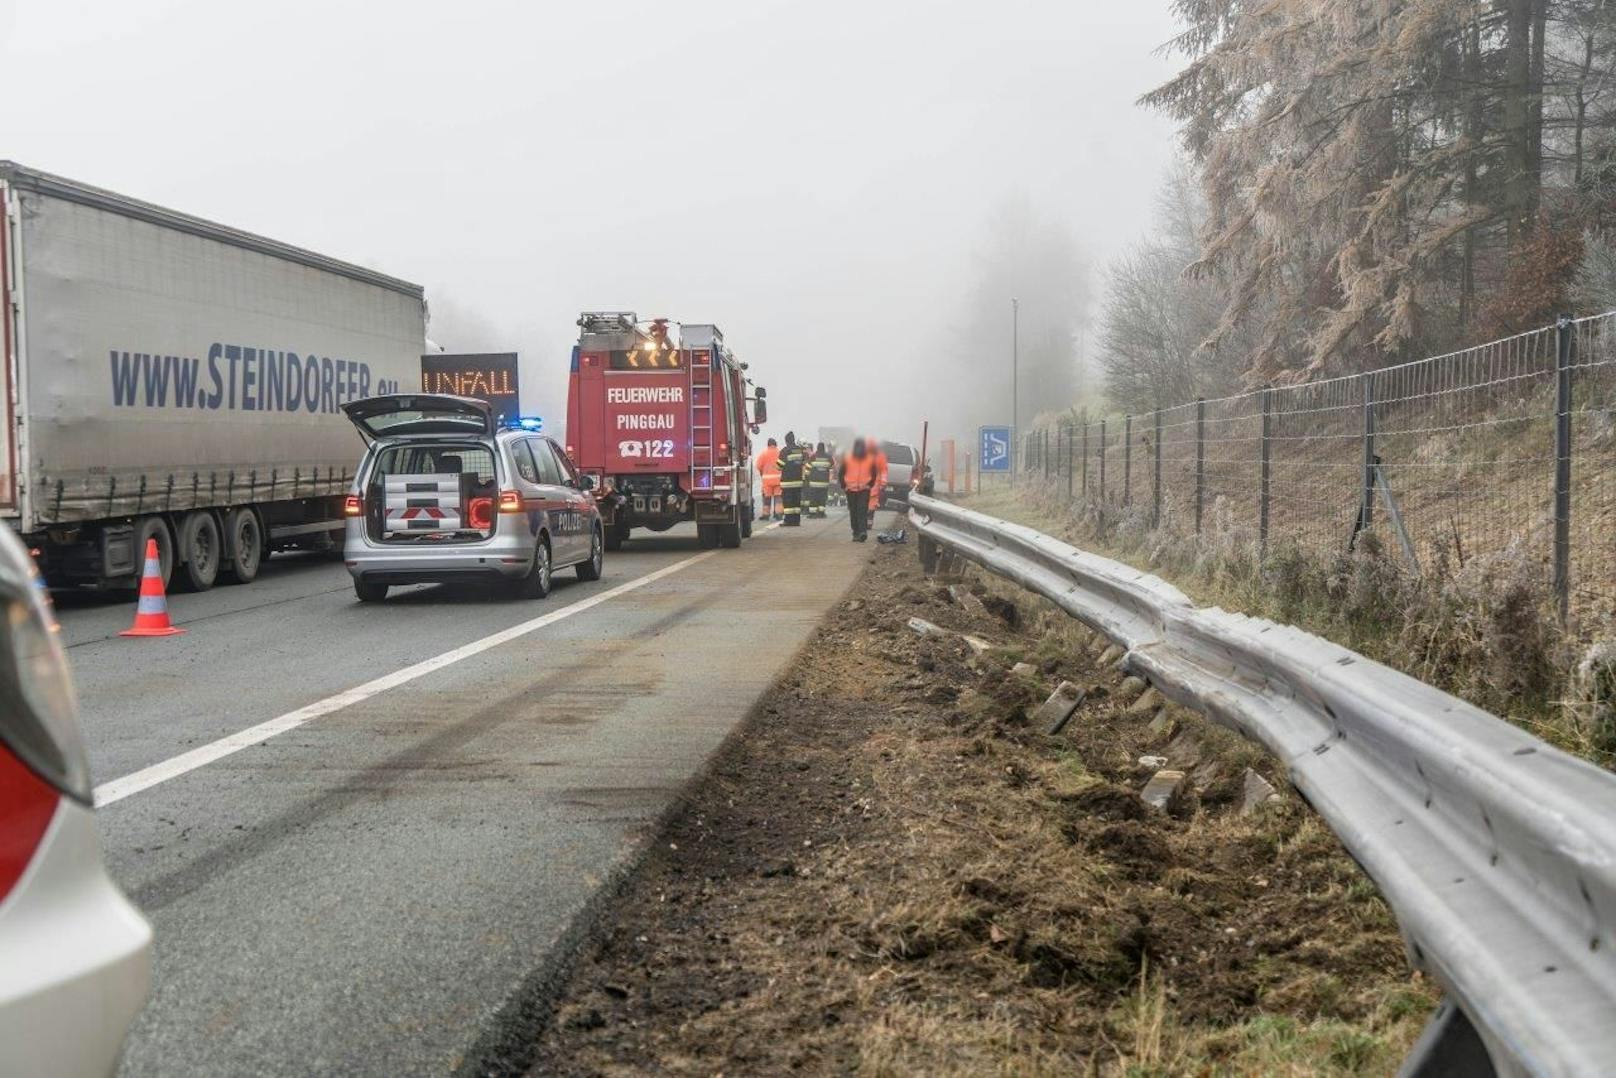 Auf der A2 kam es im Wechselabschnitt nach einer 40 Kilometer langen Verfolgungsjagd mit teilweise 200 km/h zu einem schweren Verkehrsunfall. 